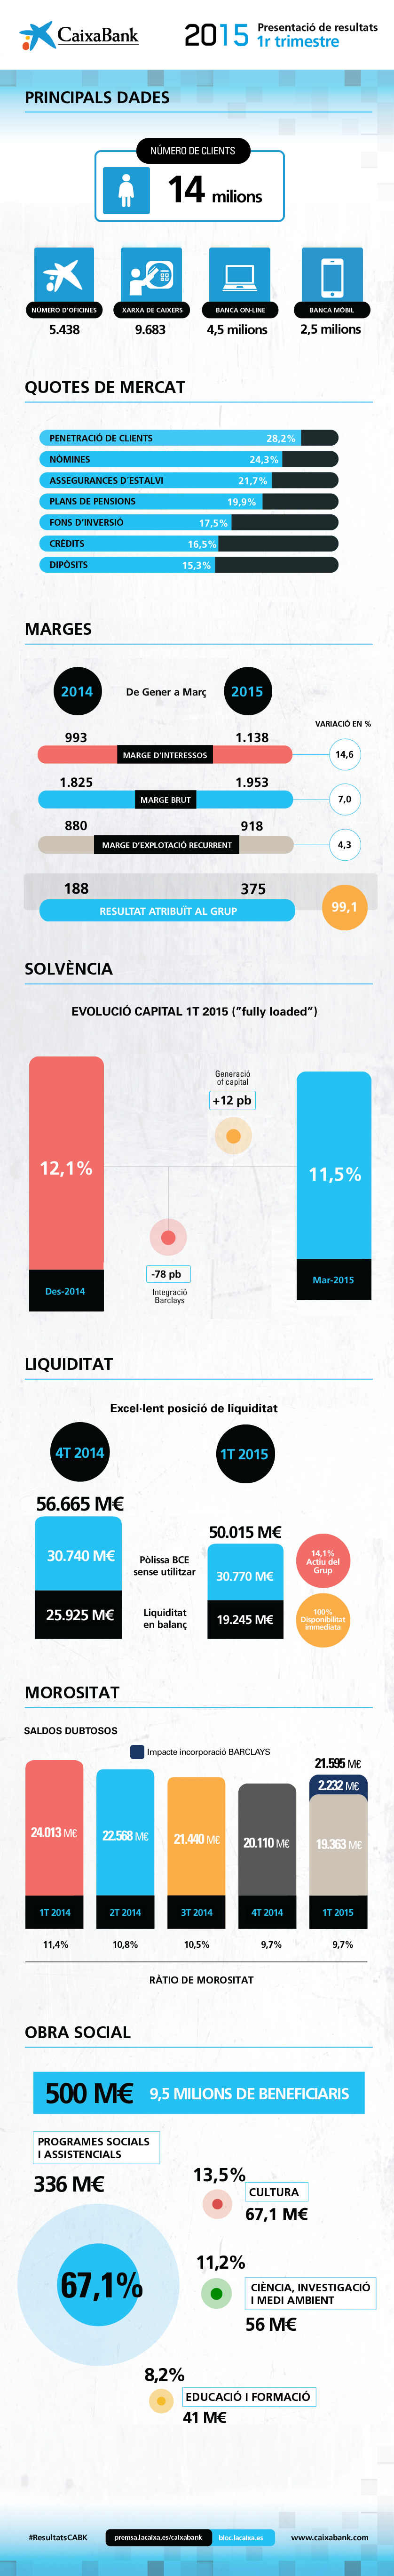 Resultats de CaixaBank 1T2015 - infografia